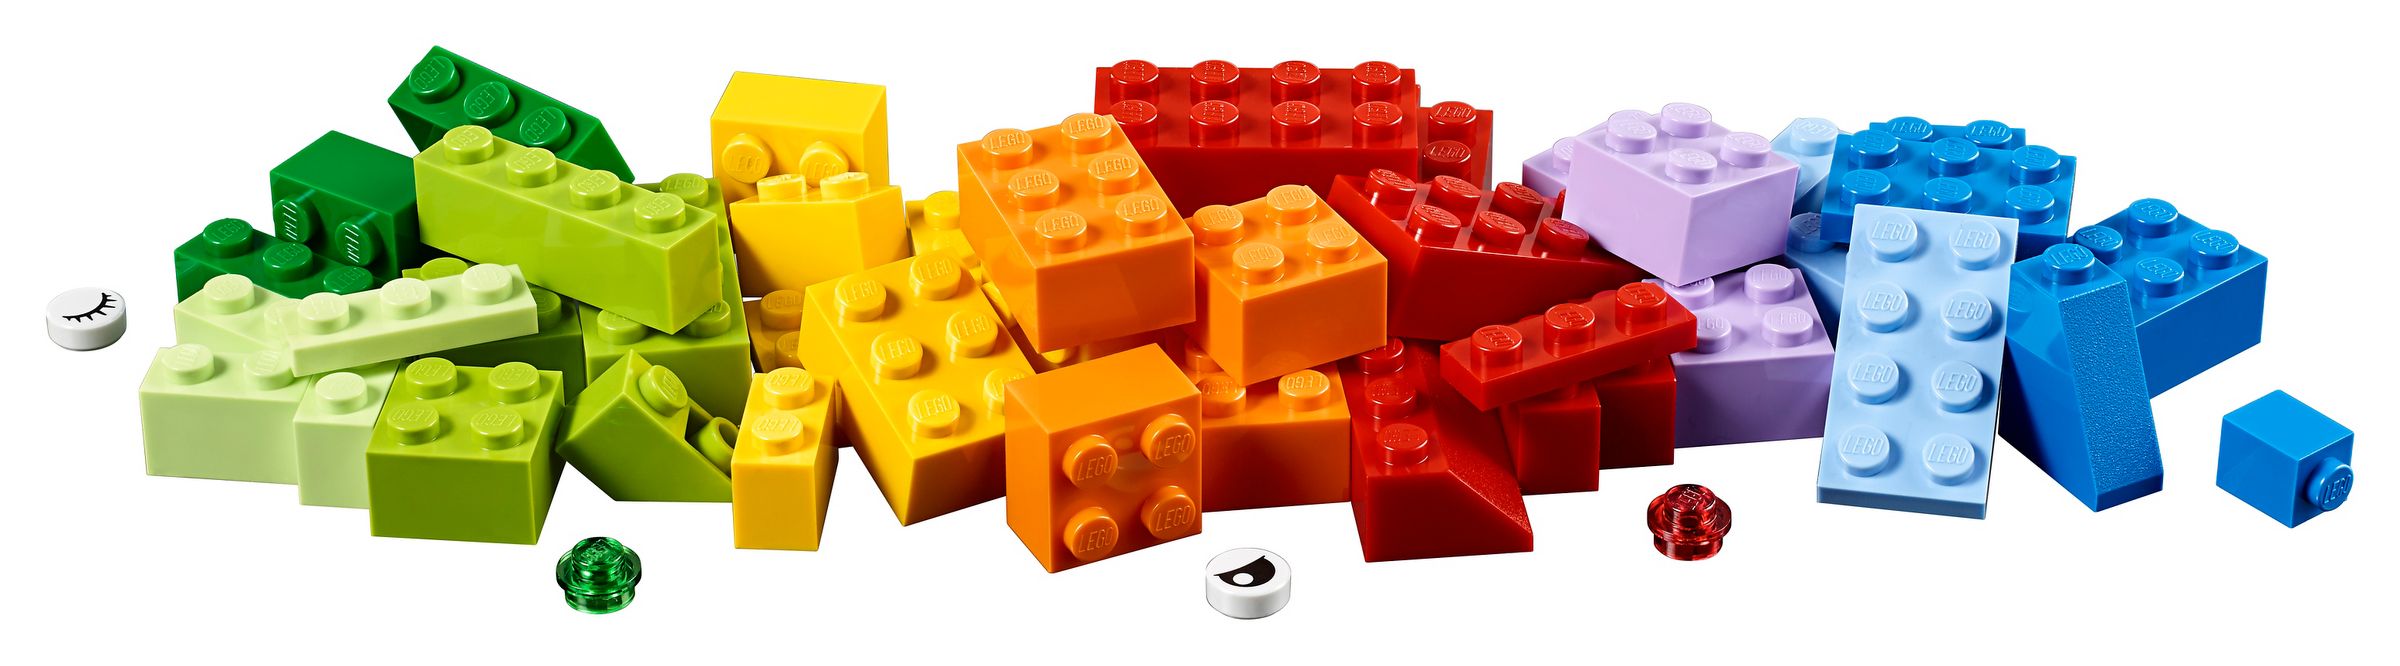 LEGO Classic 10717 Extragroße Steinebox LEGO_10717_alt4.jpg